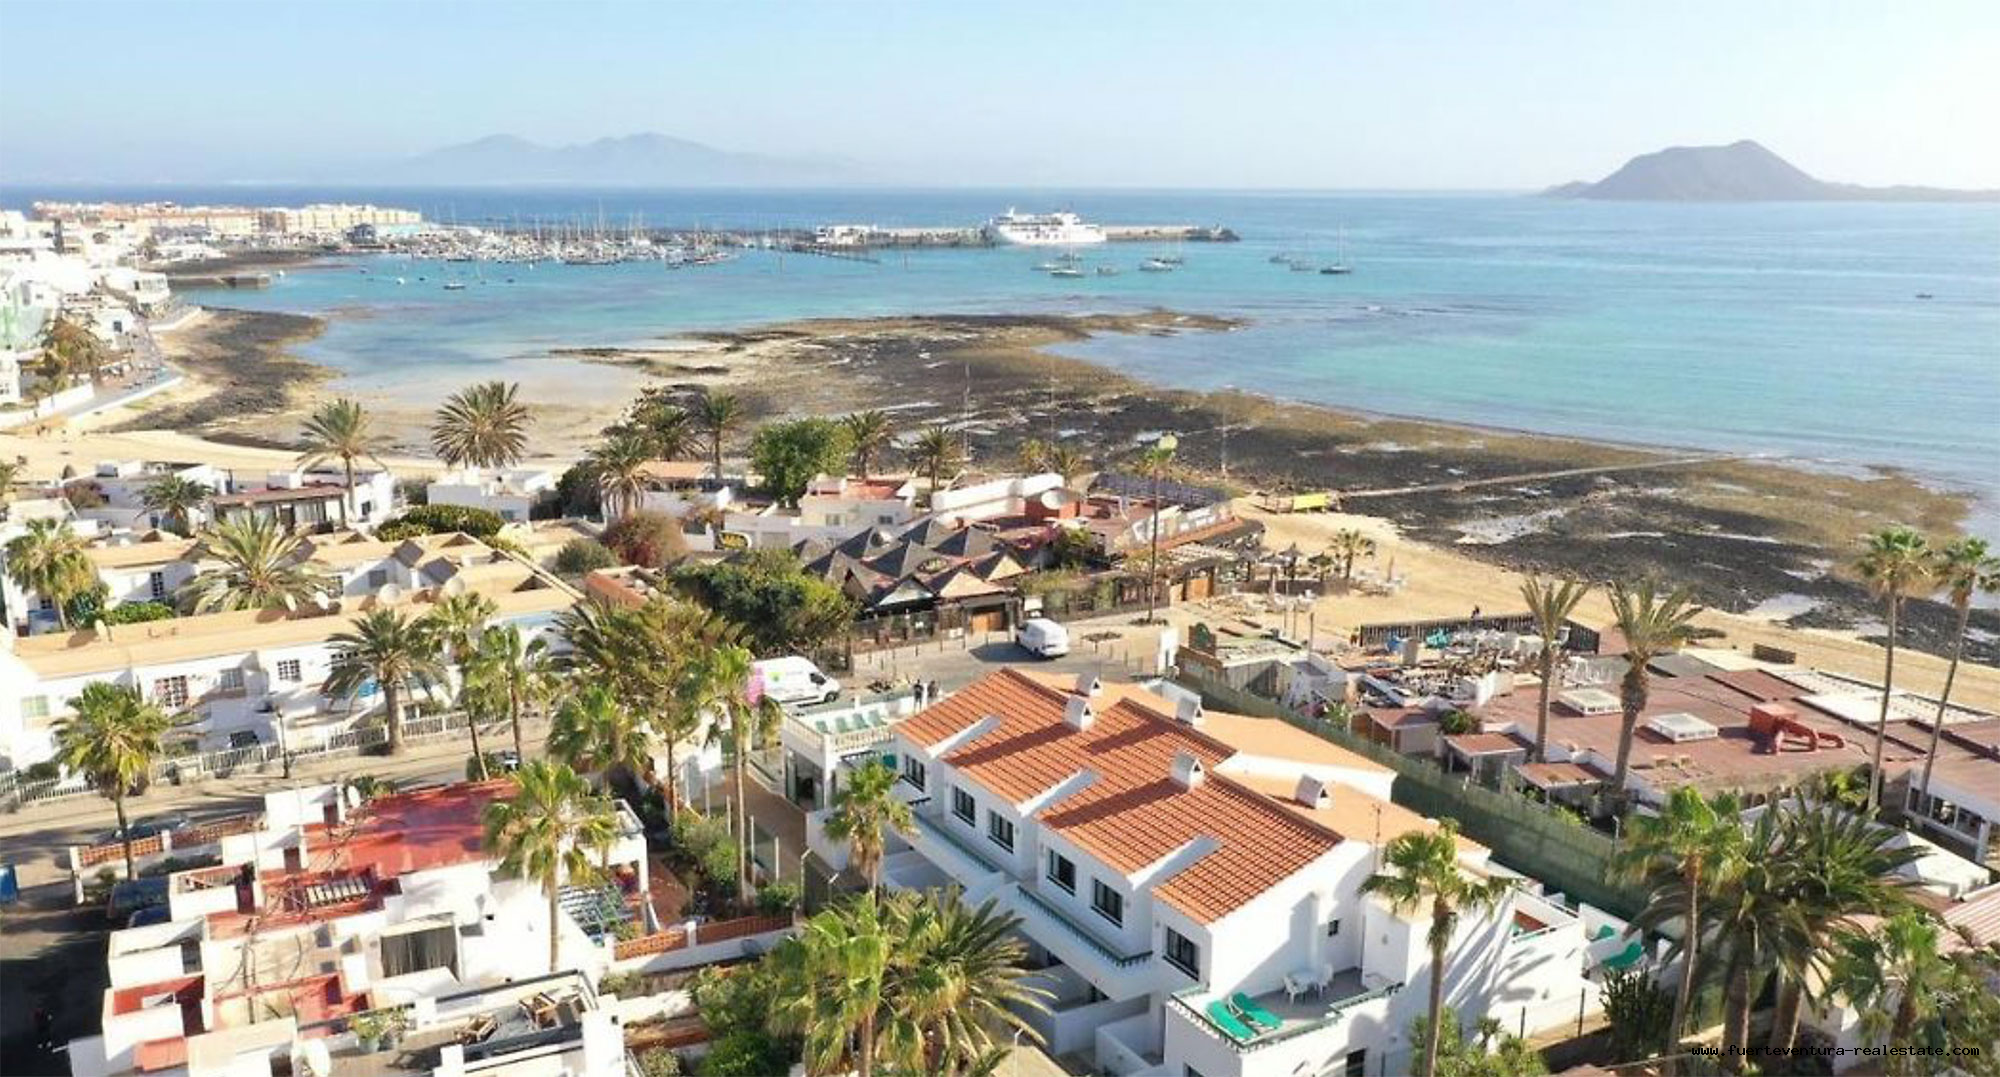 Te koop! Een vakantiecomplex met 14 appartementen en zwembad in Corralejo, Fuerteventura!